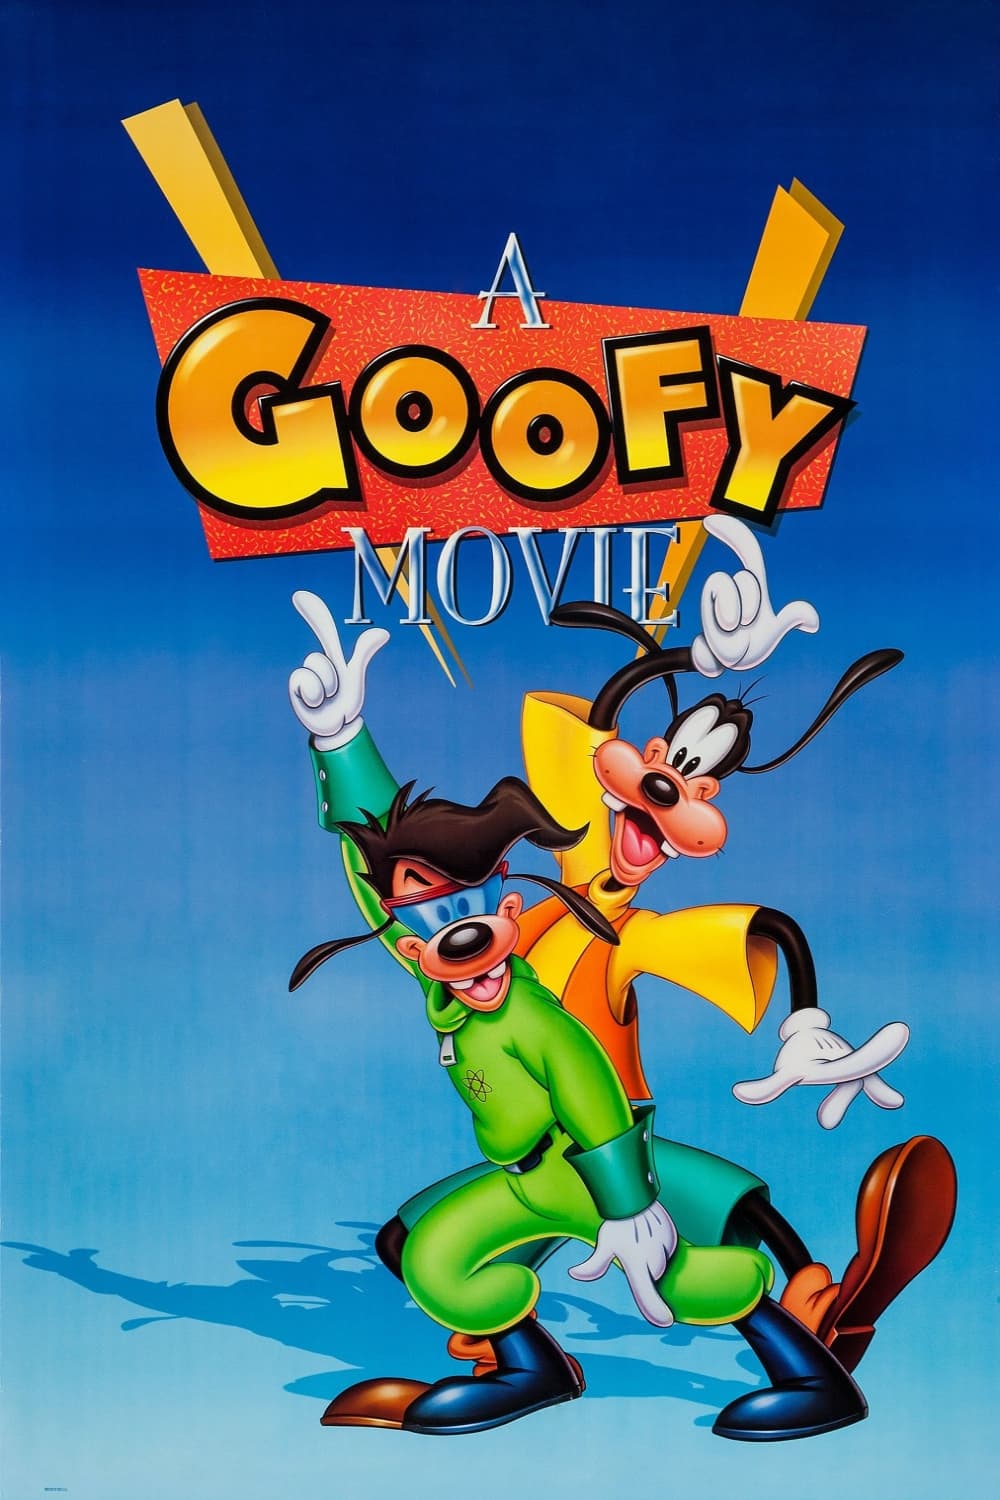 A Goofy Movie Movie poster